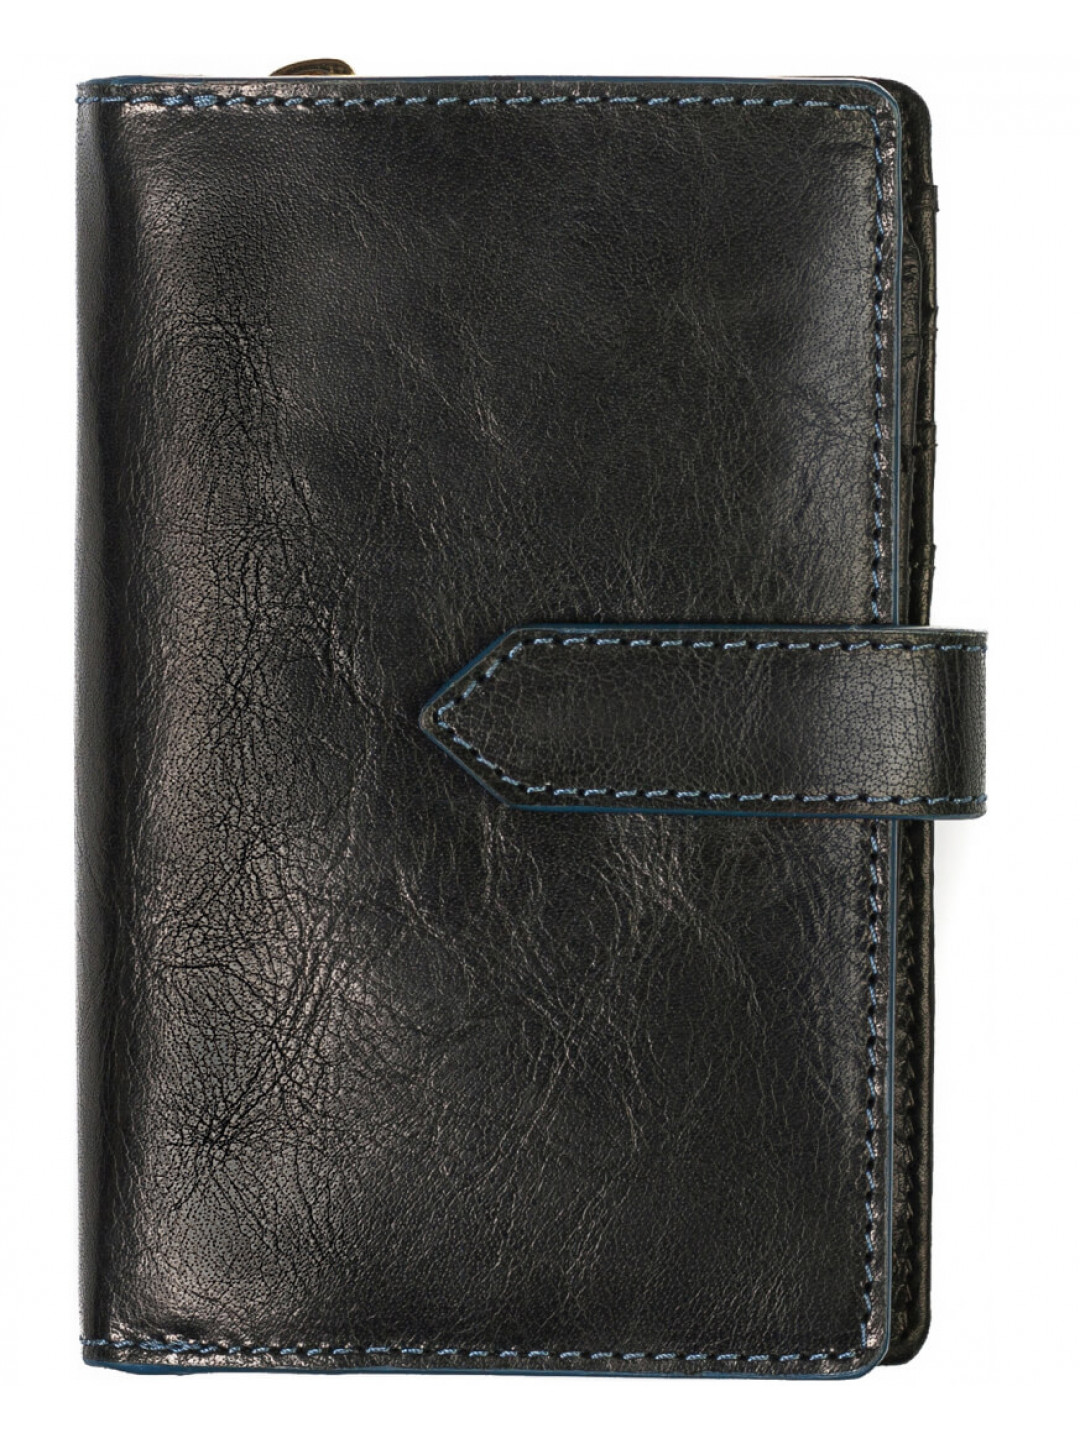 SEGALI Dámská kožená peněženka 3743 black blue